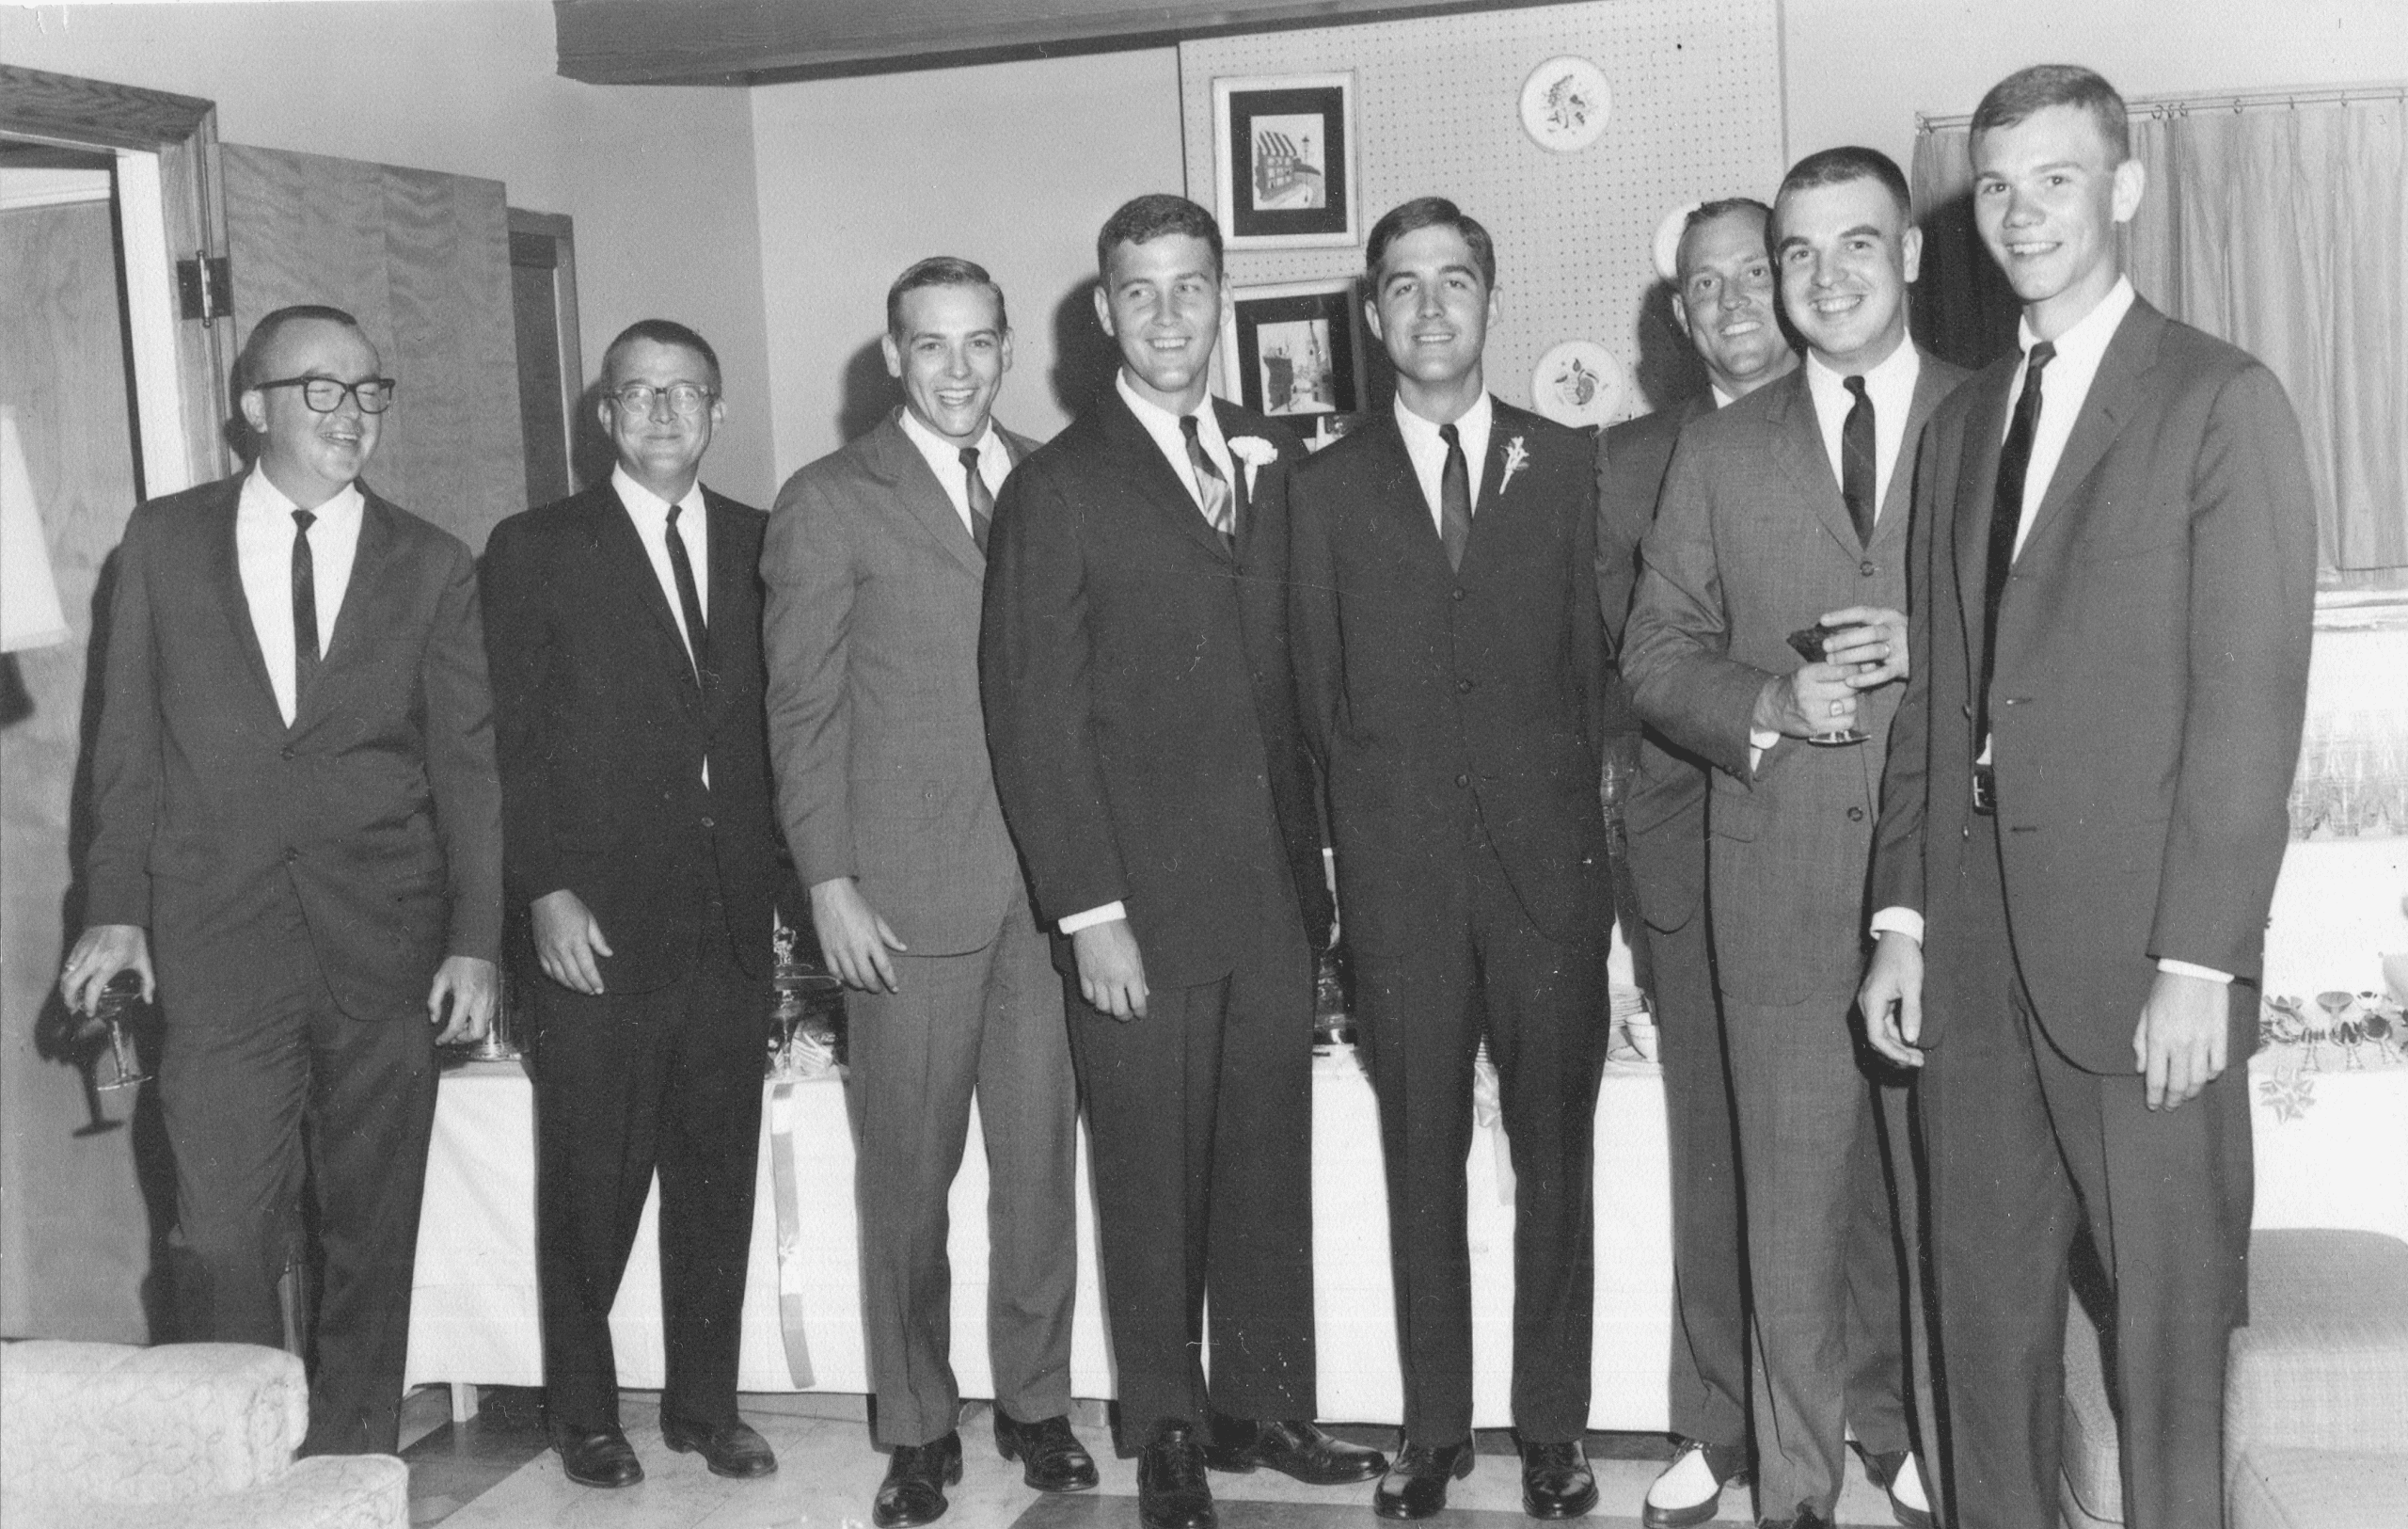 1965 – Wilmans men, Jabie’s wedding